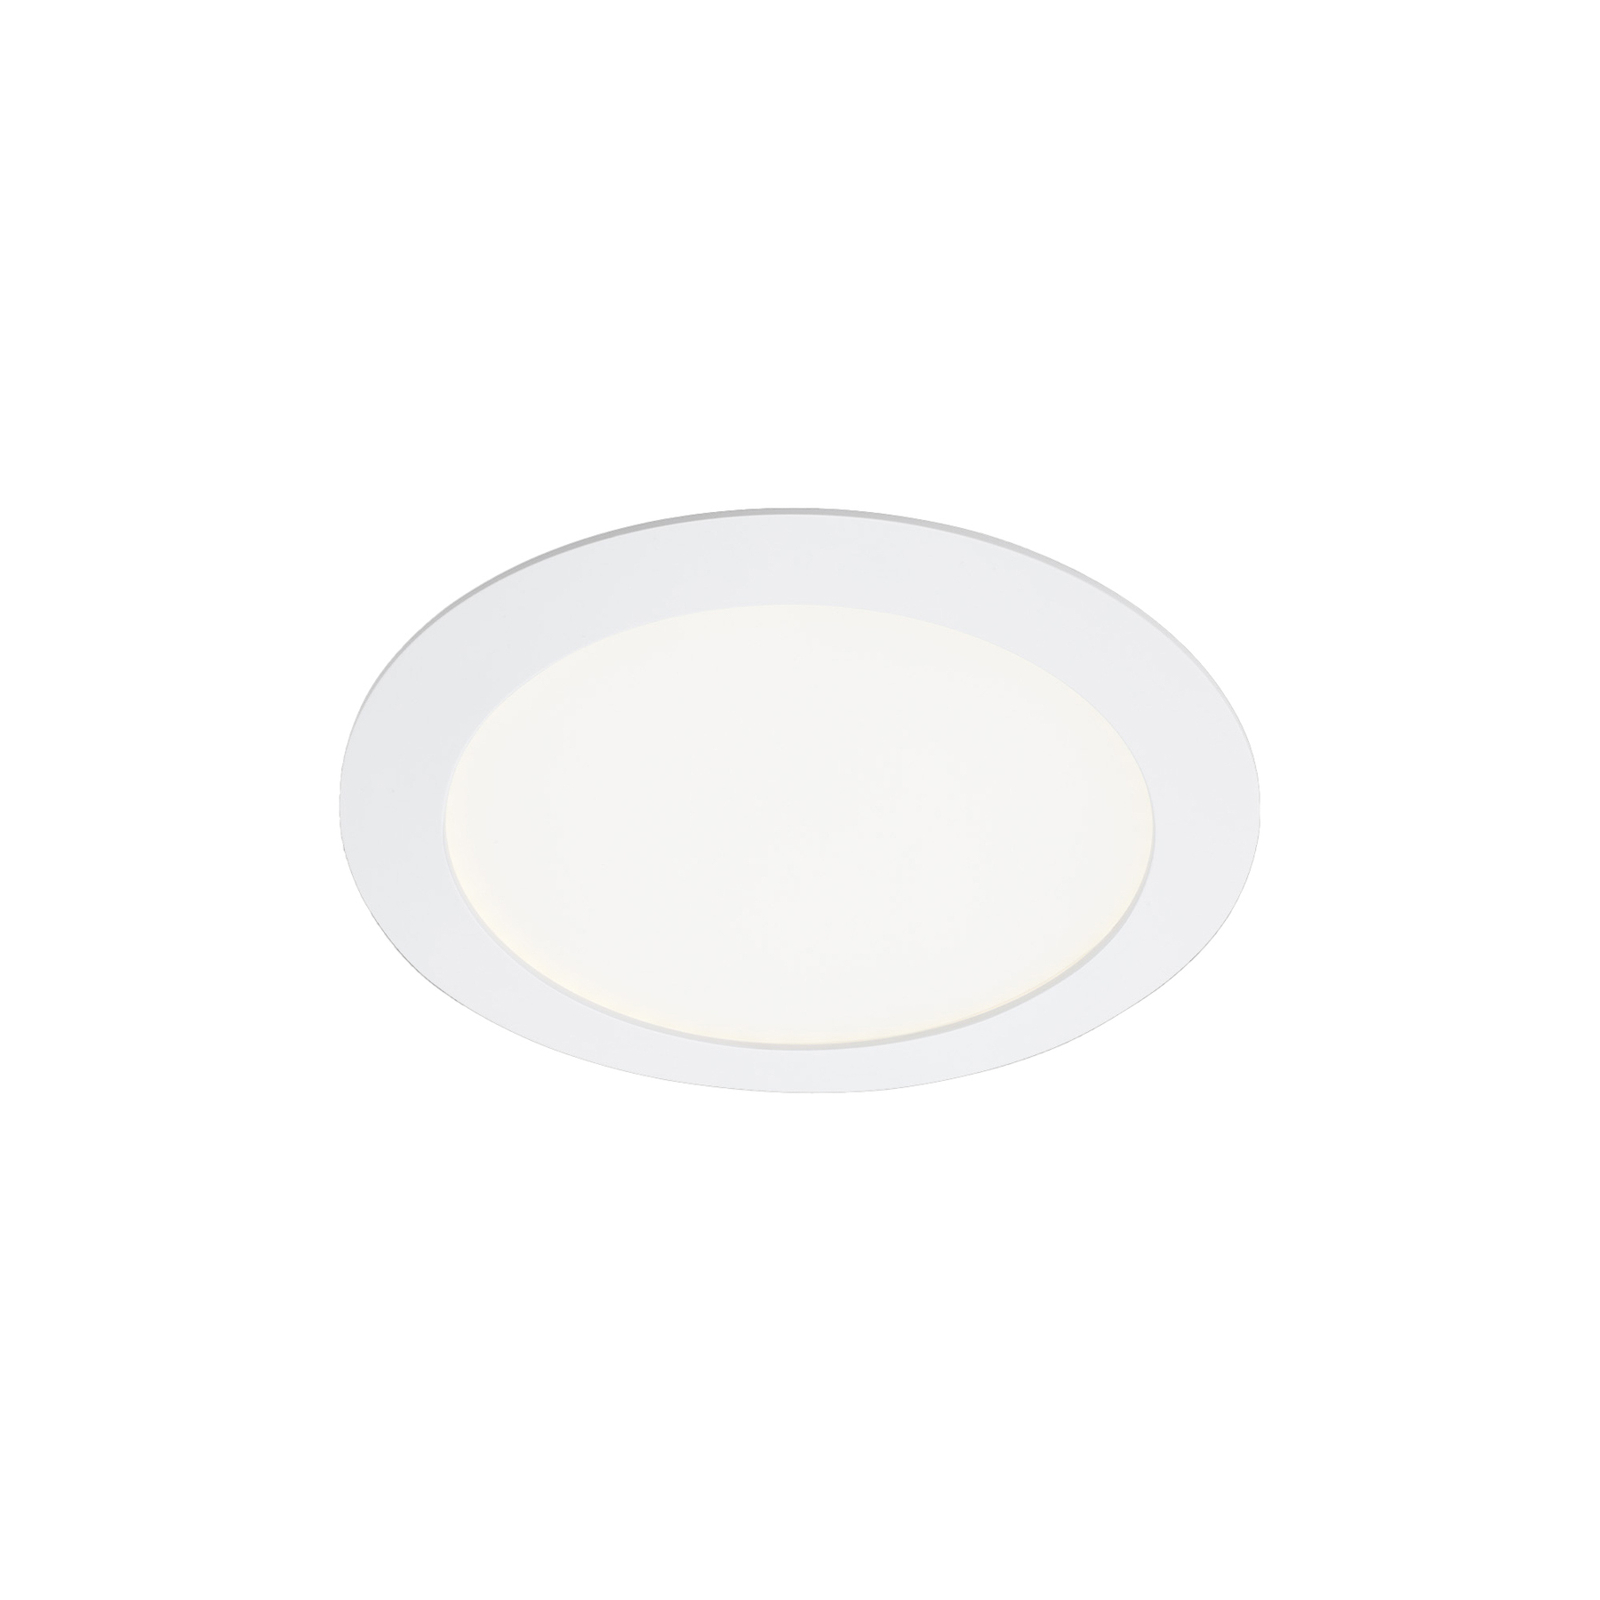 LED-Einbauleuchte Virgo, RGBW, weiß, Ø 17 cm